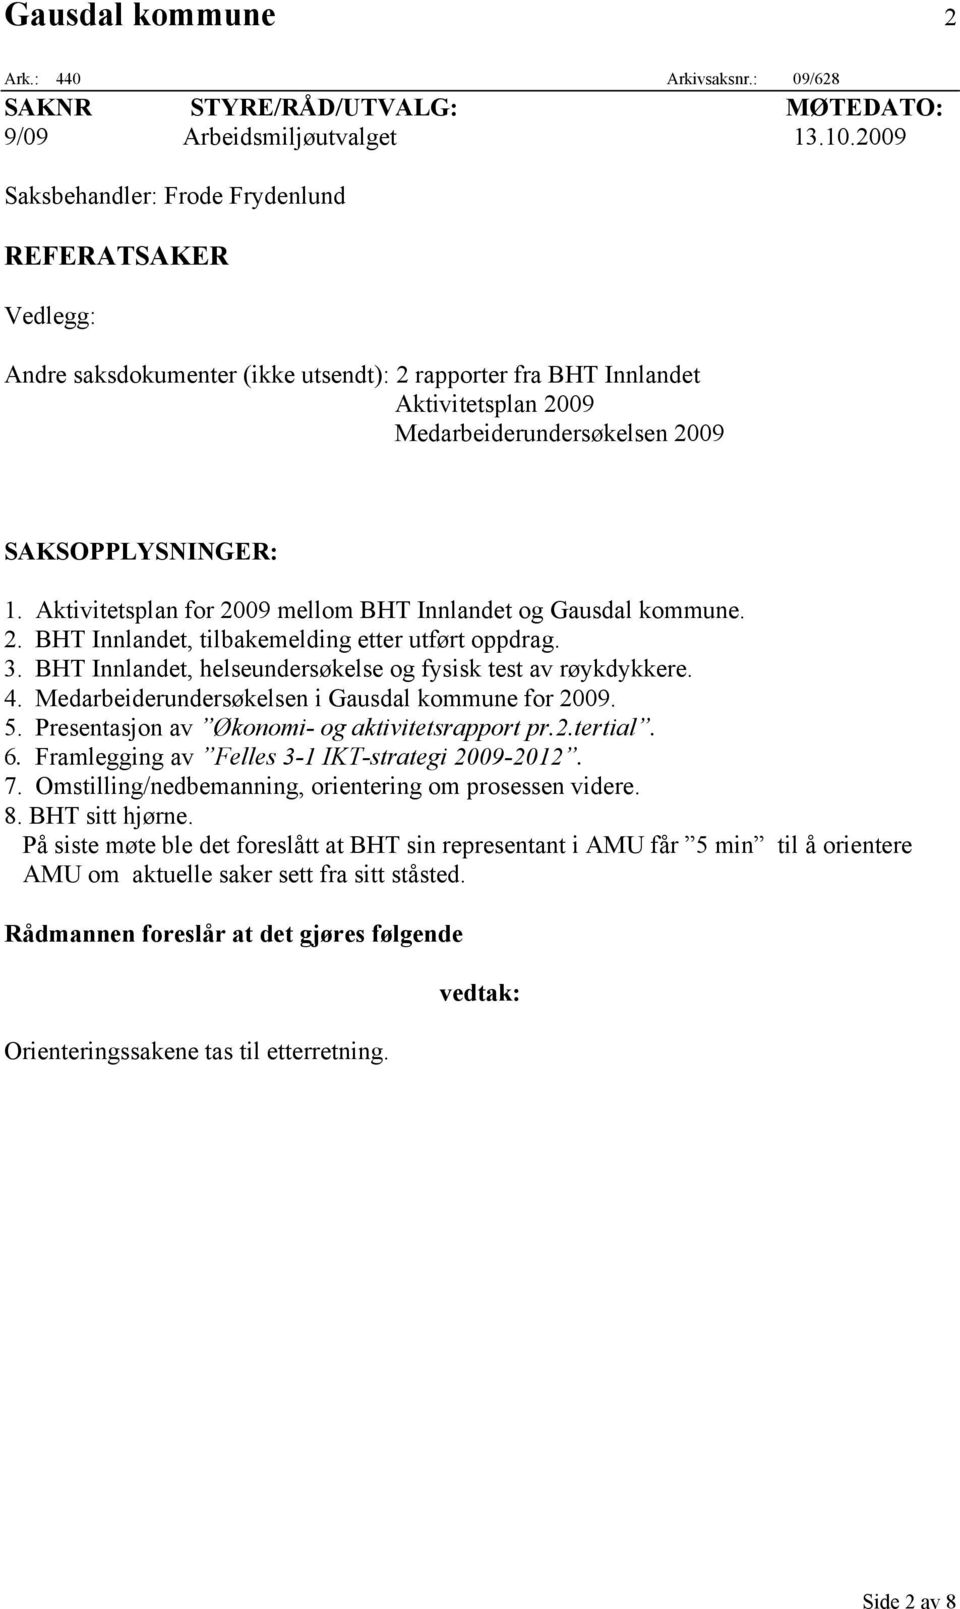 Aktivitetsplan for 2009 mellom BHT Innlandet og Gausdal kommune. 2. BHT Innlandet, tilbakemelding etter utført oppdrag. 3. BHT Innlandet, helseundersøkelse og fysisk test av røykdykkere. 4.